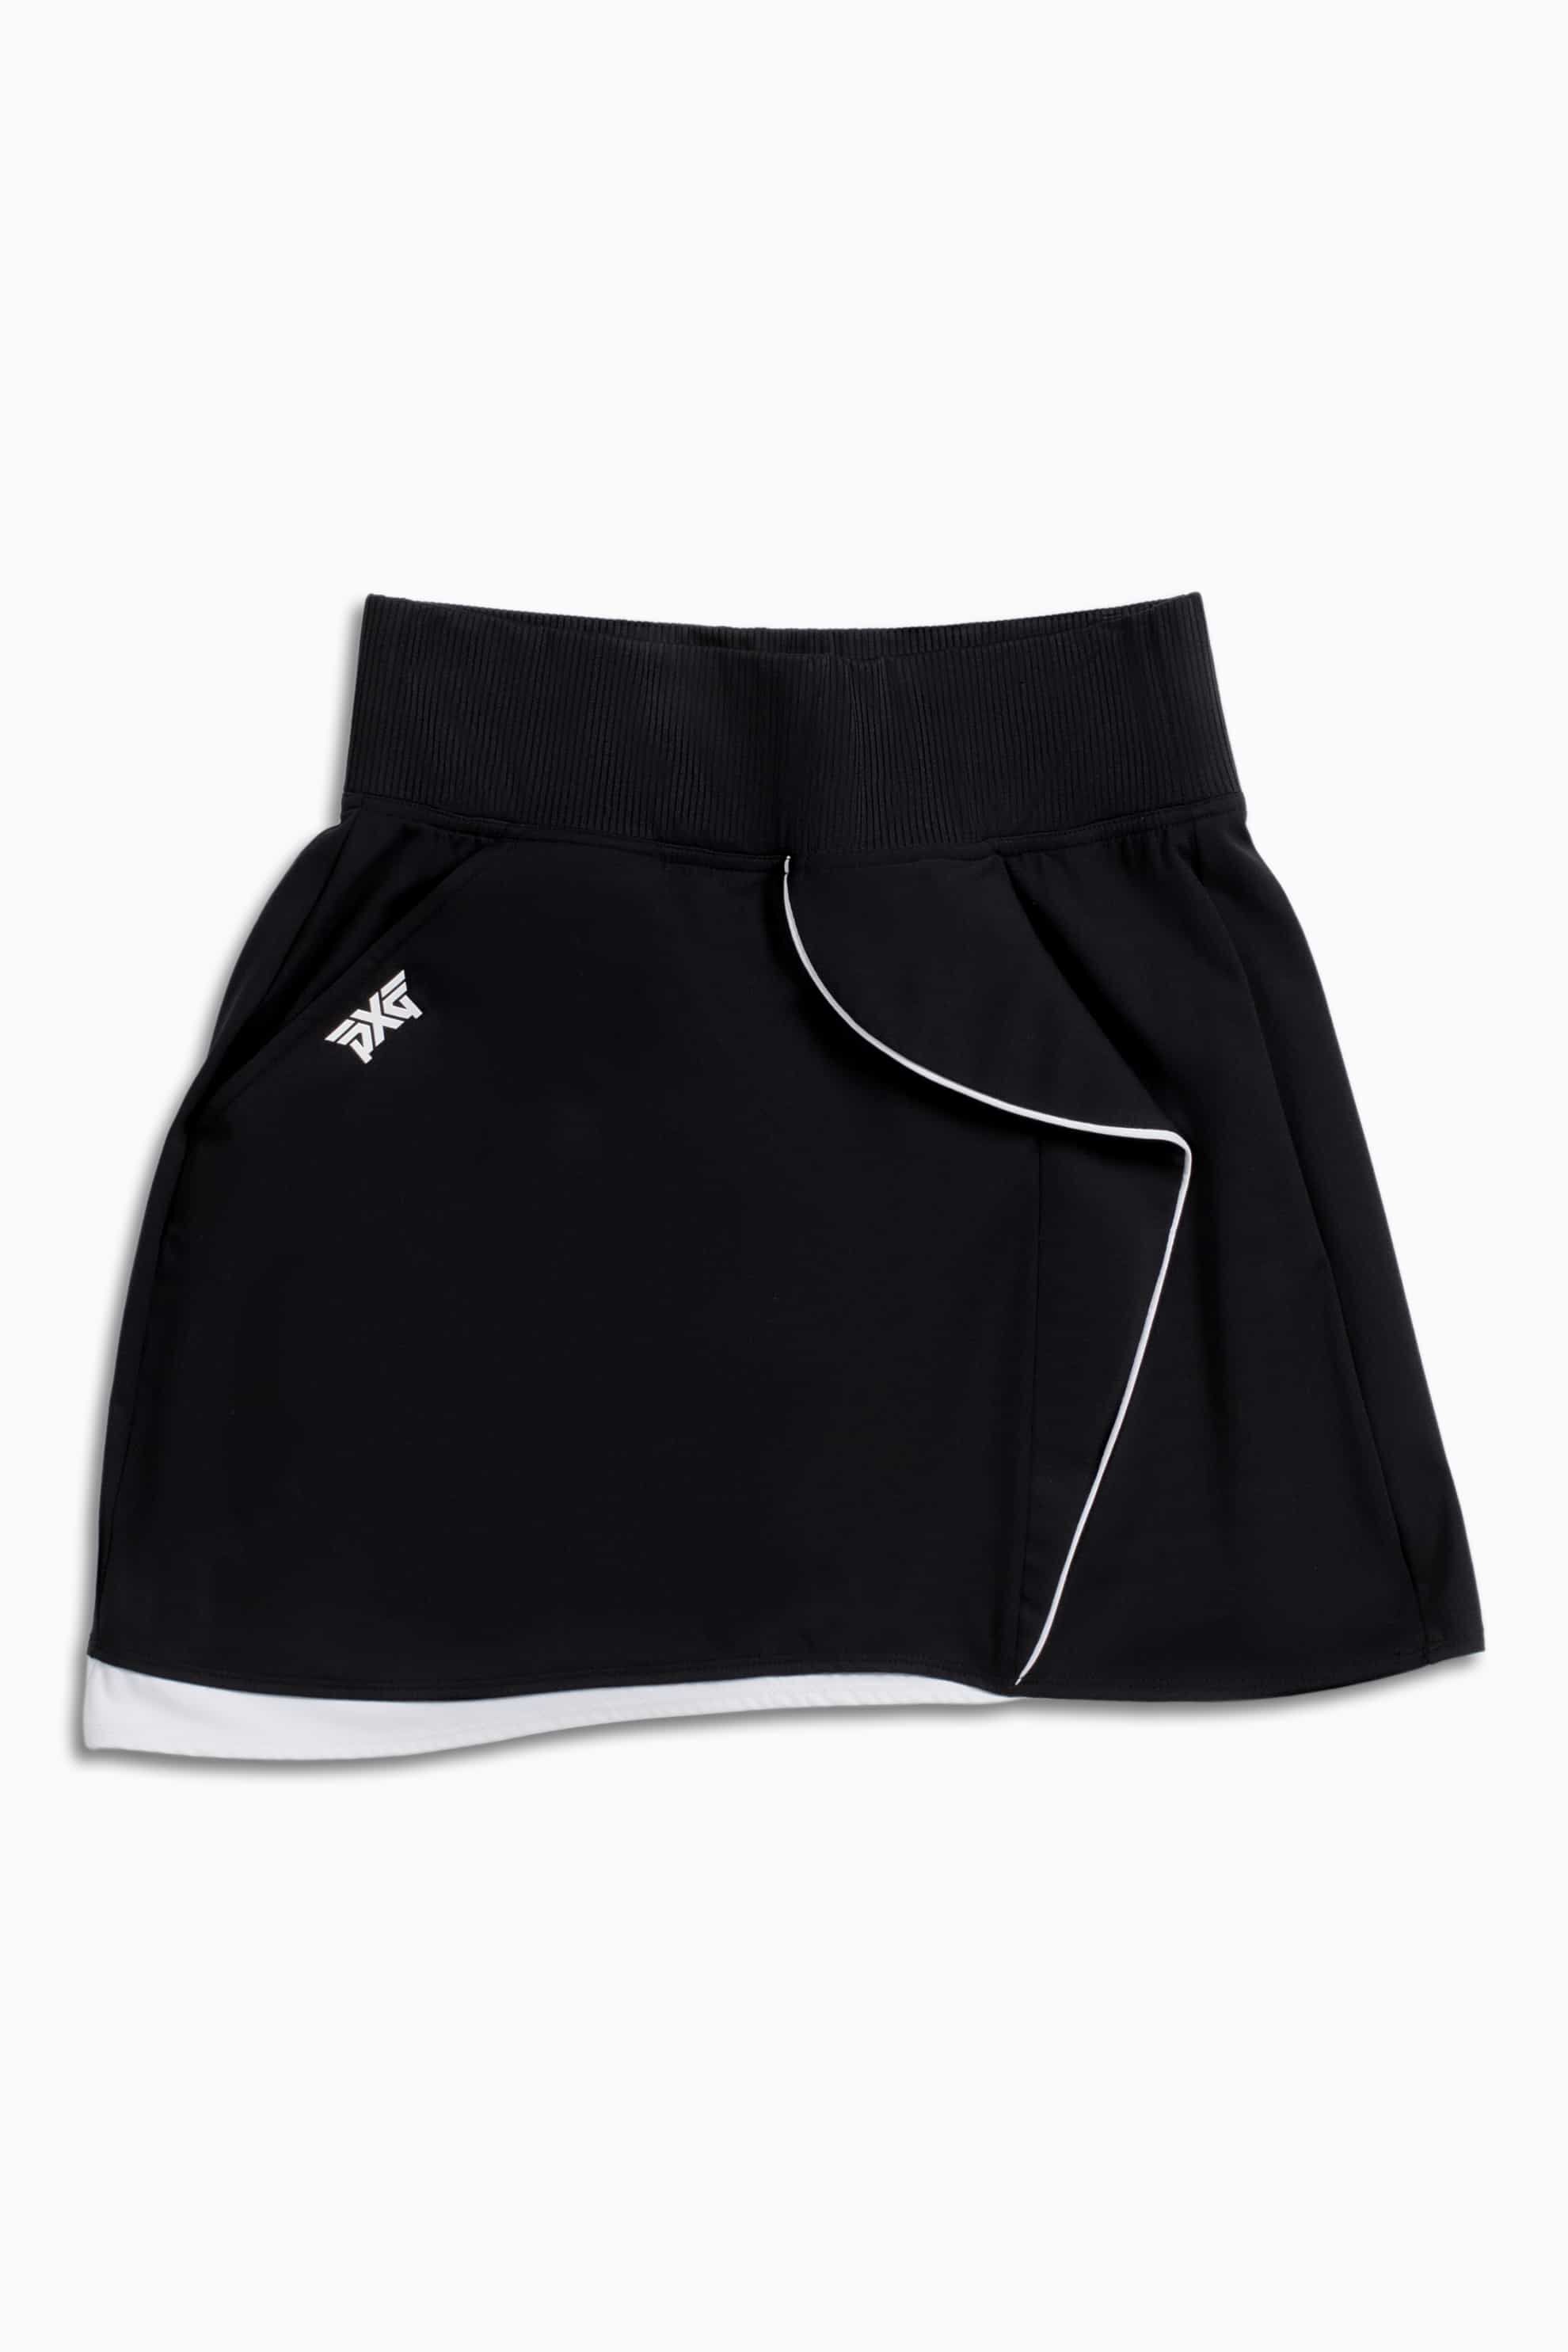 Shop Women's Golf スカート＆ワンピース | PXG JP